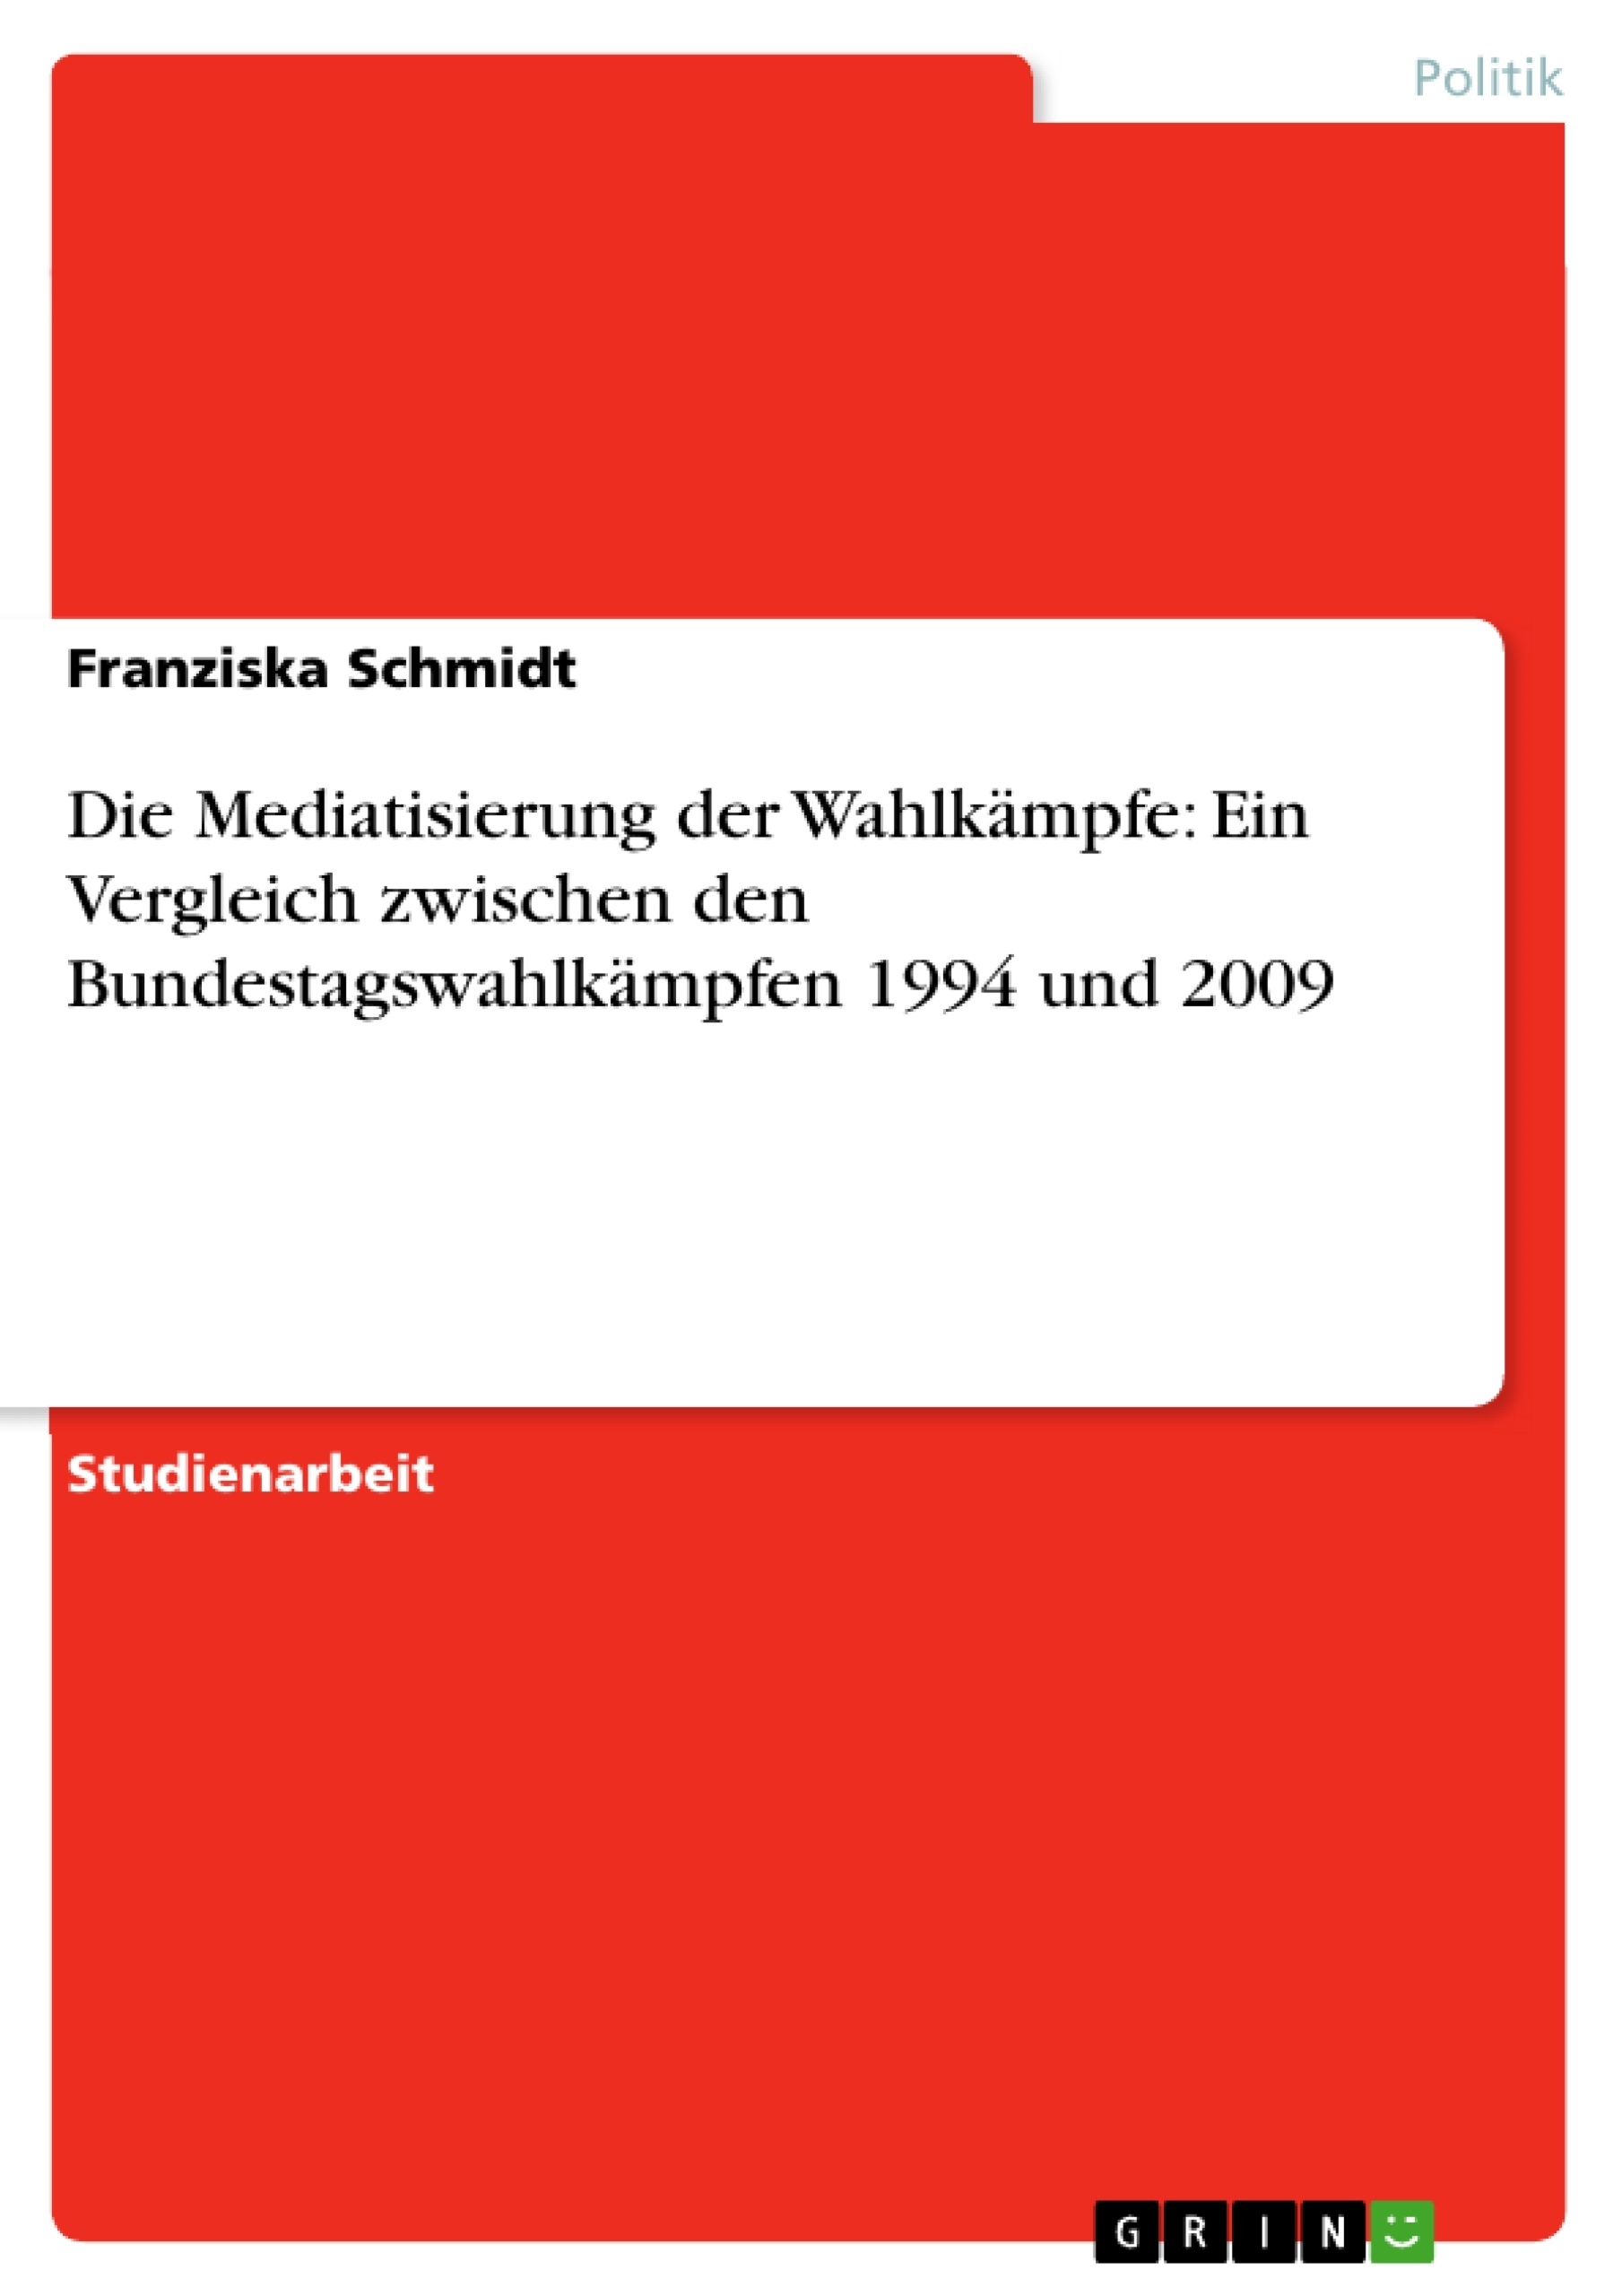 Titel: Die Mediatisierung der Wahlkämpfe: Ein Vergleich zwischen den Bundestagswahlkämpfen 1994 und 2009